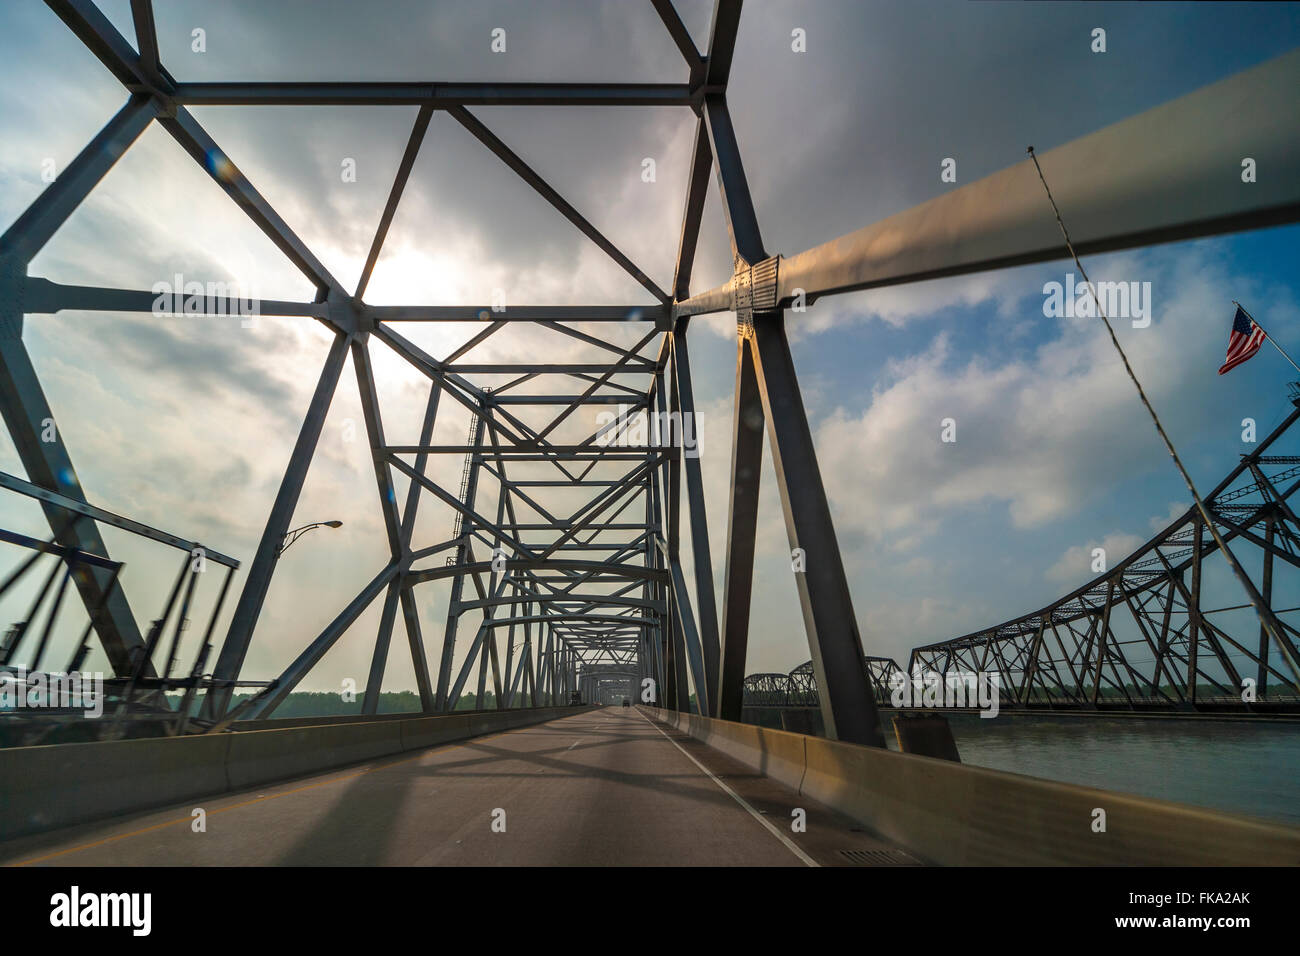 Vicksburg i-20-Brücke mit alten Vicksburg Brücke auf der rechten Seite. Überquerung des Mississippi River und der Staatsgrenze von Miss La. Stockfoto